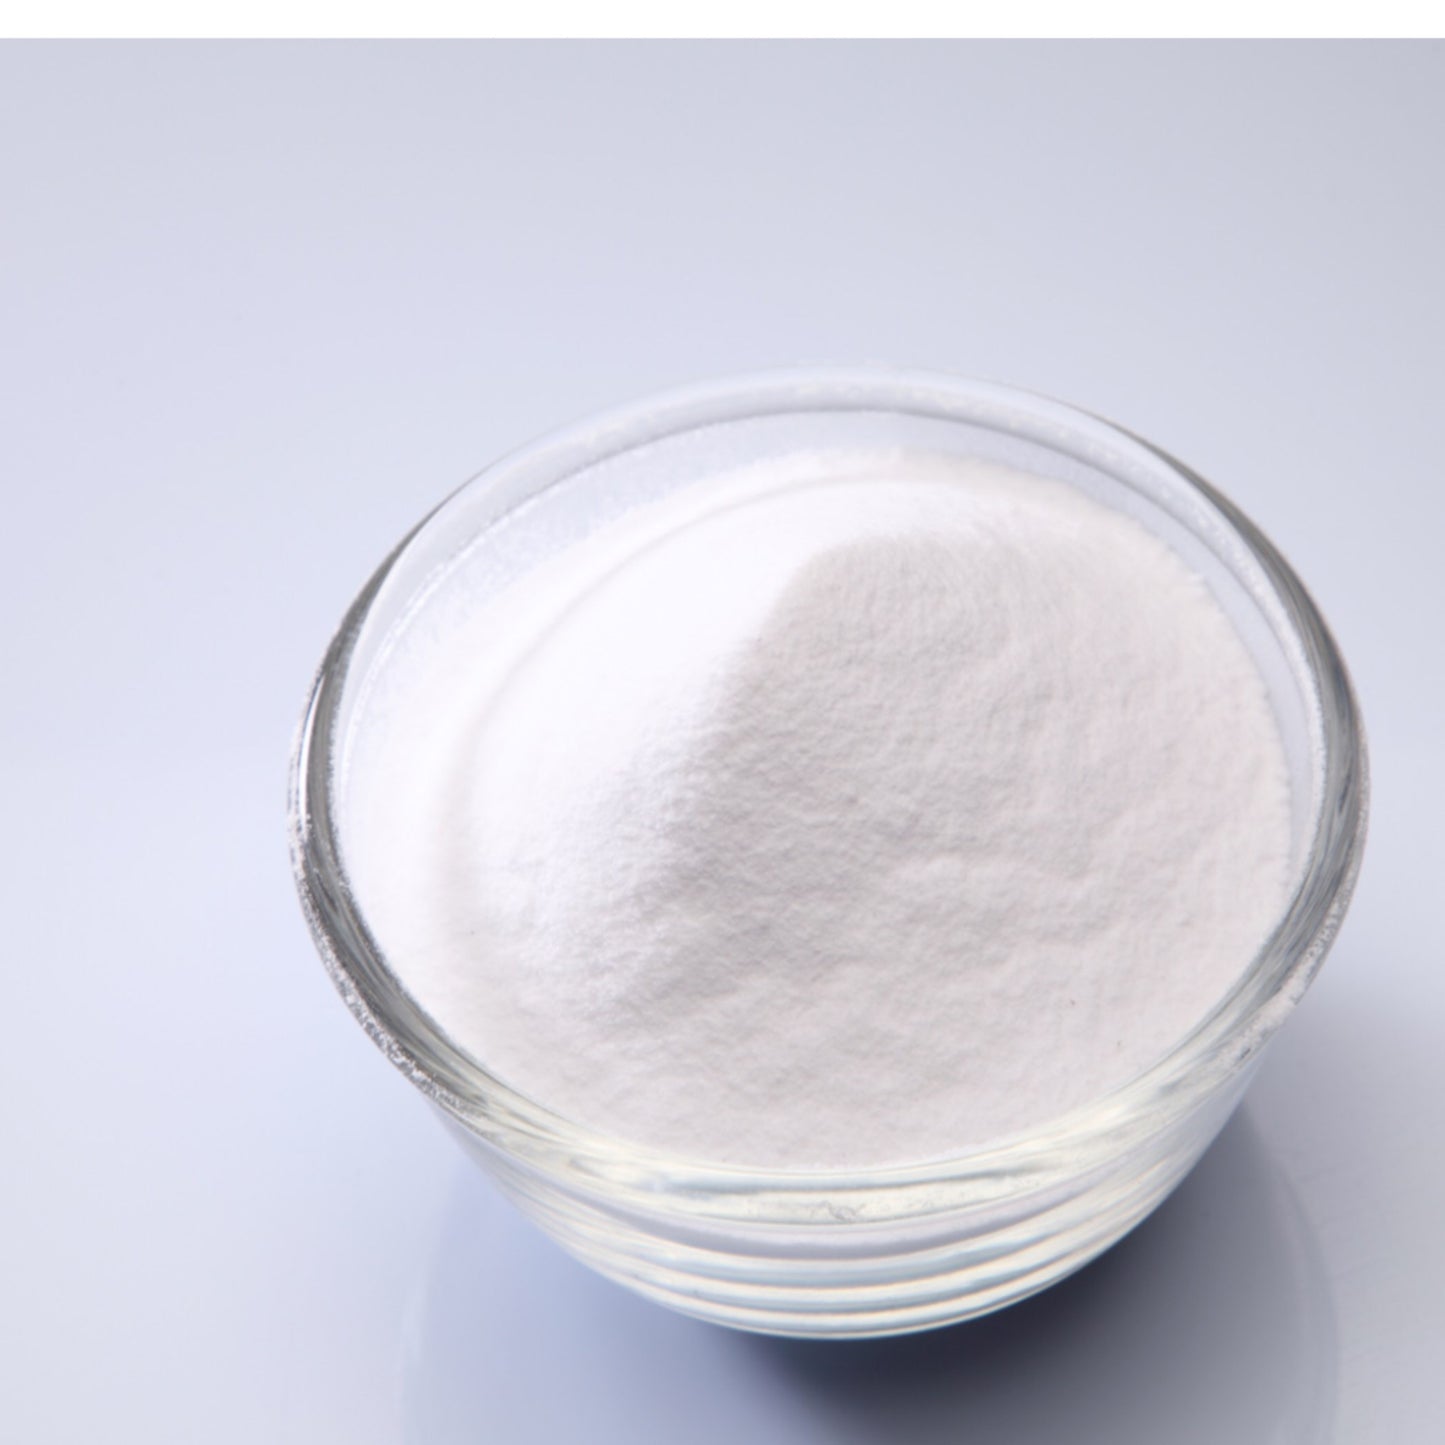 1 Sodium Bicarbonate - 120 Capsules